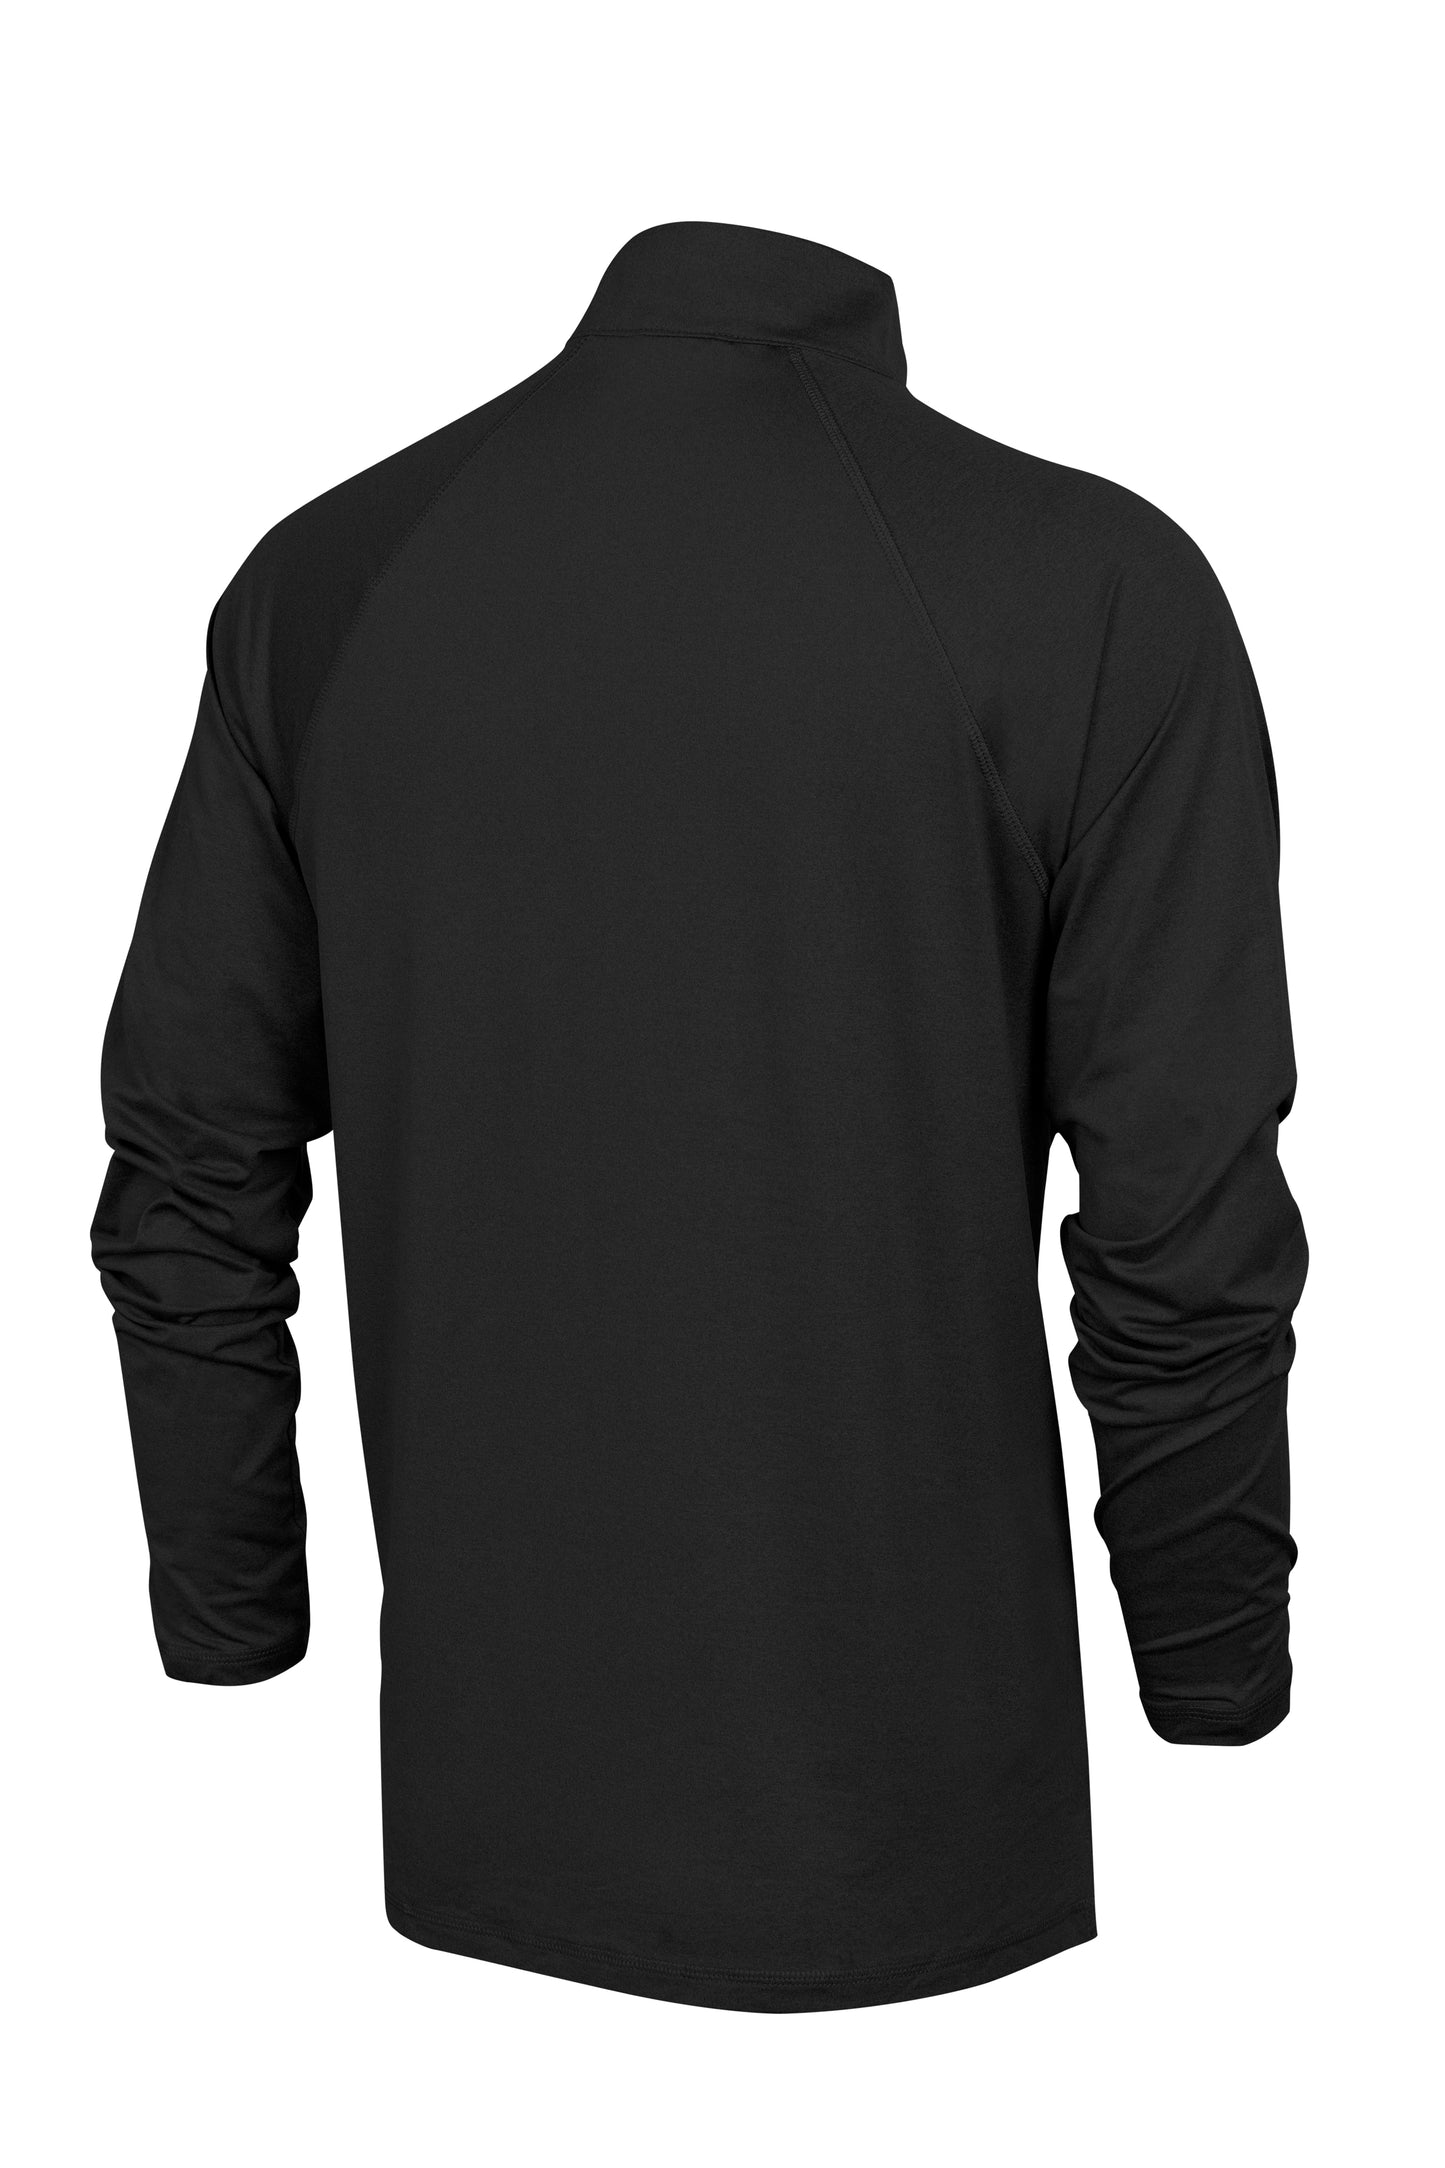 New Era Power 1/2 Zip Long Sleeve Shirt